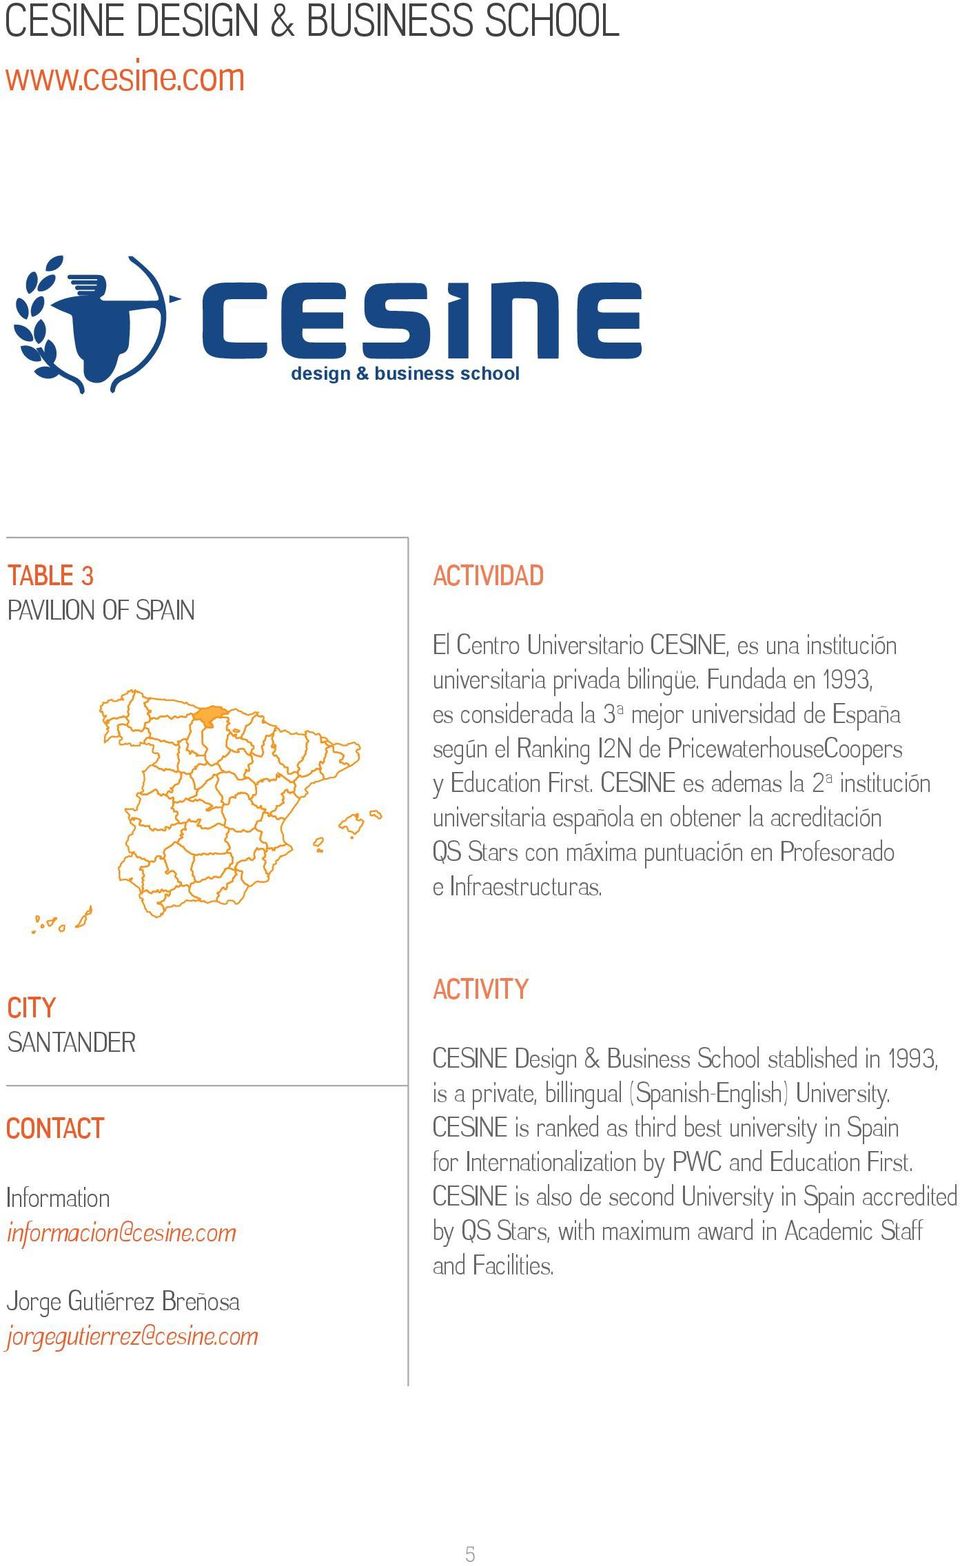 CESINE es ademas la 2ª institución universitaria española en obtener la acreditación QS Stars con máxima puntuación en Profesorado e Infraestructuras. SANTANDER Information informacion@cesine.